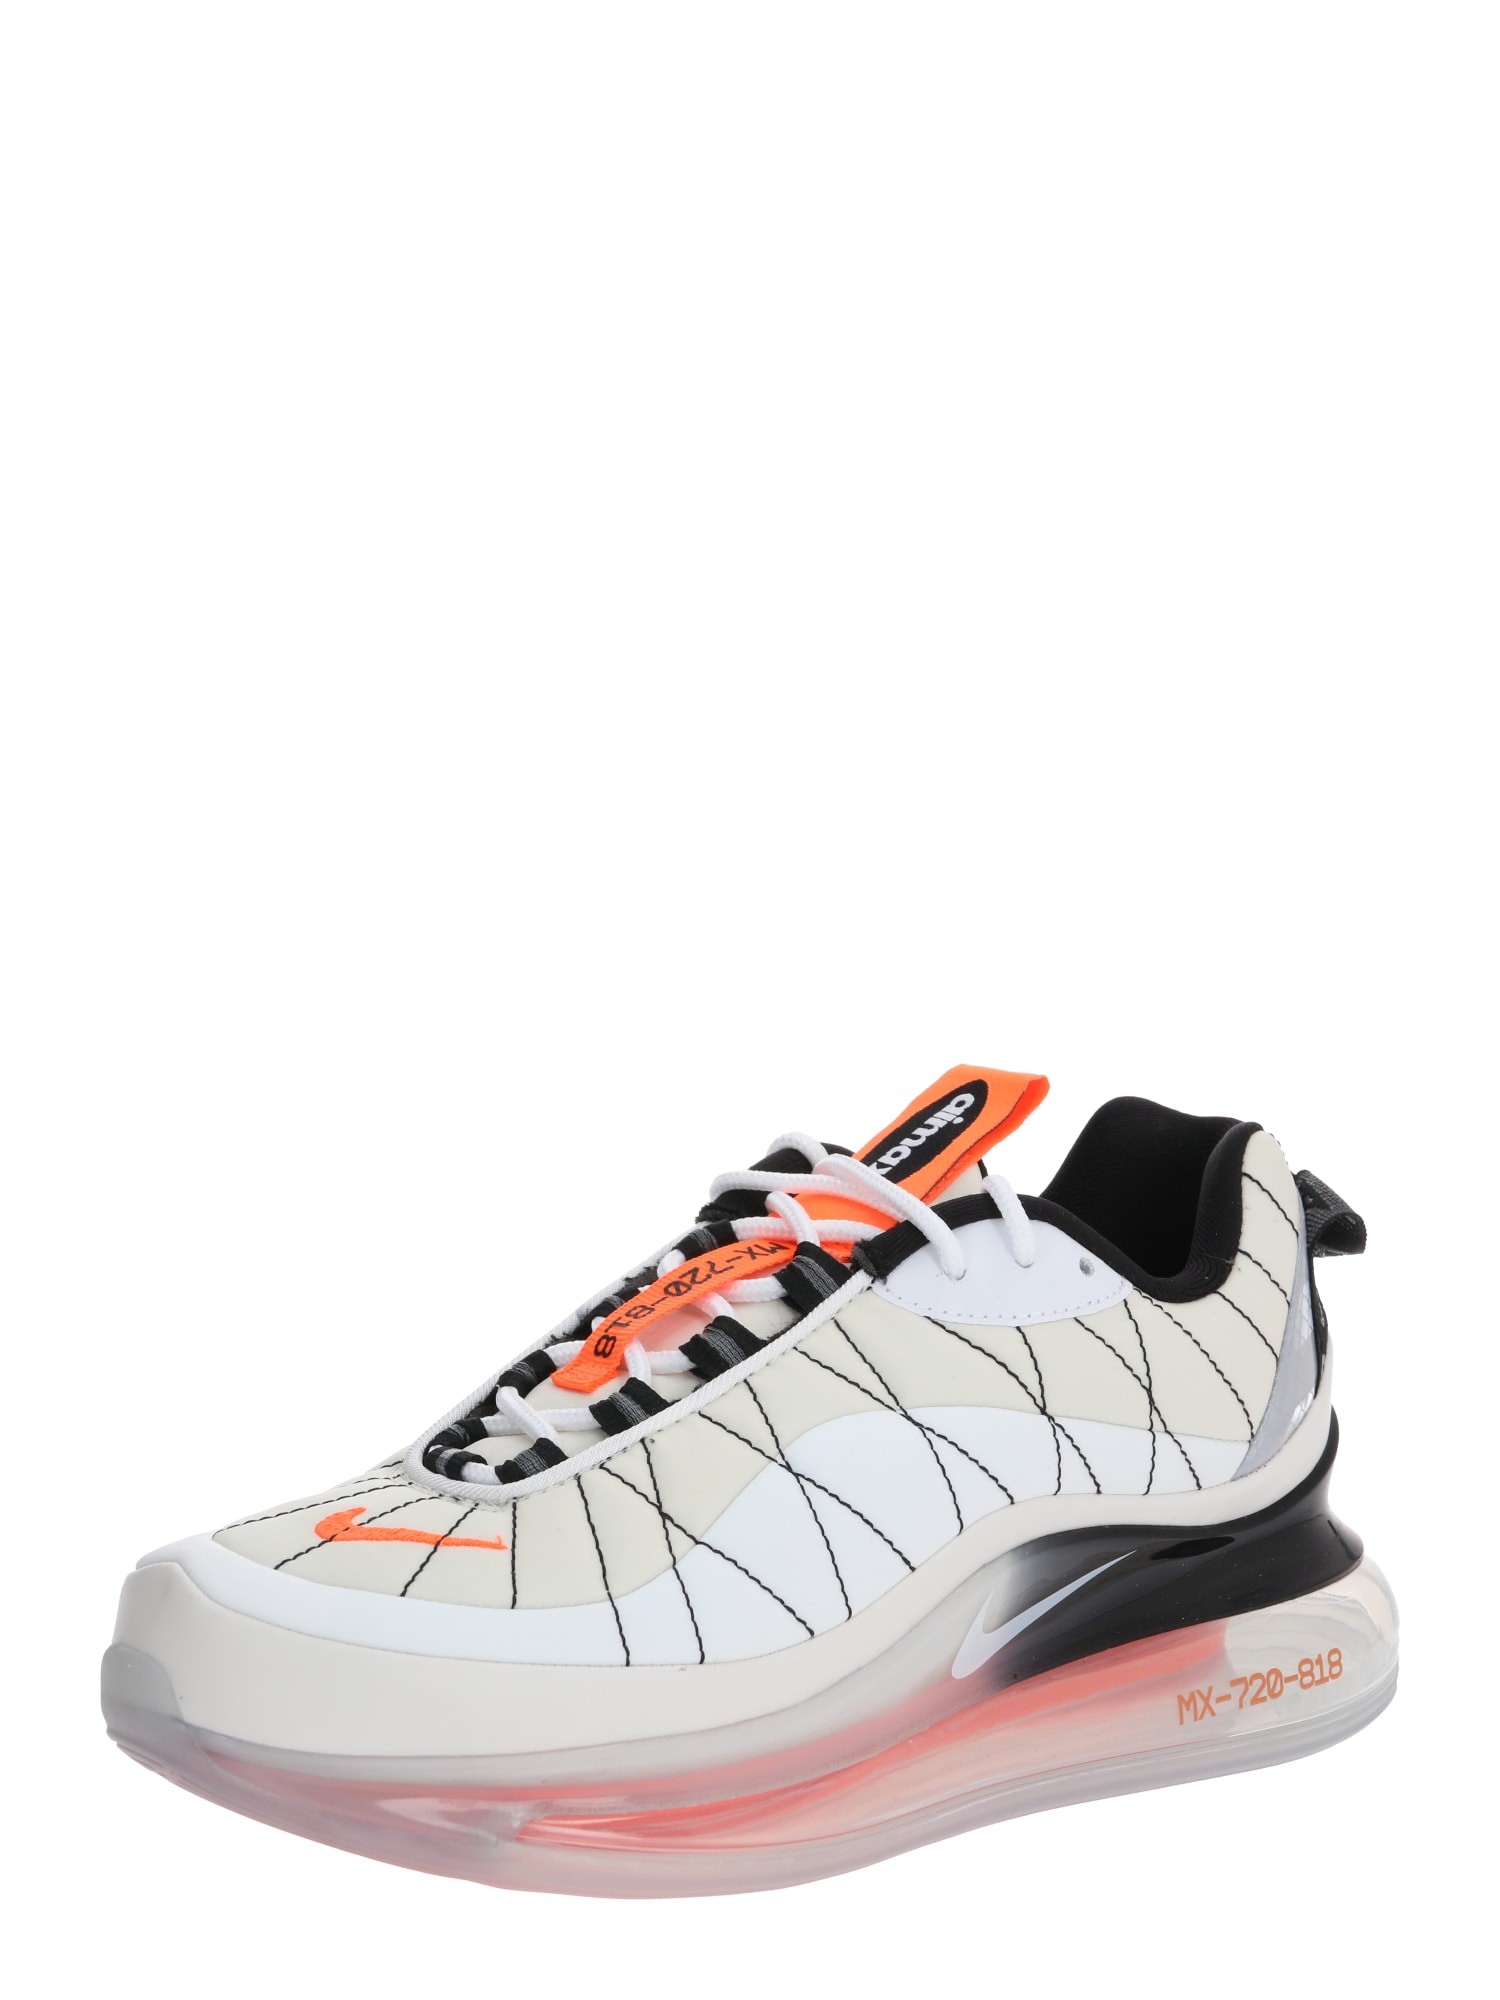 Nike Sportswear Sneaker 'MX-720-818'